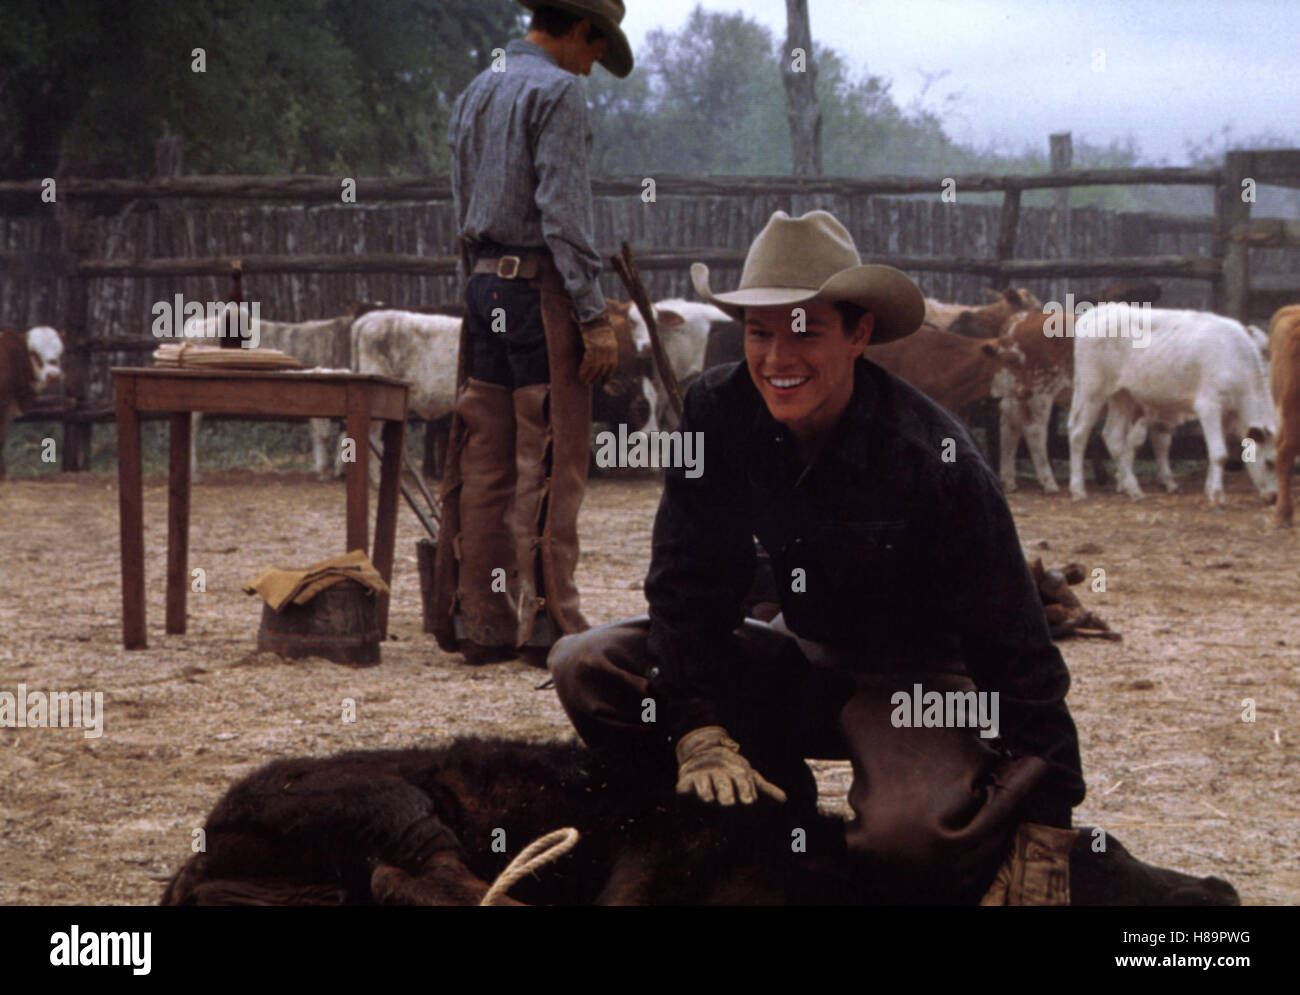 Tous les Die schönen Pferde, (tous les jolis chevaux) USA 2000, Regie : Billy Bob Thornton, Matt Damon, Ausdruck : Cowboy, Vieh, Kuh, couenne Banque D'Images